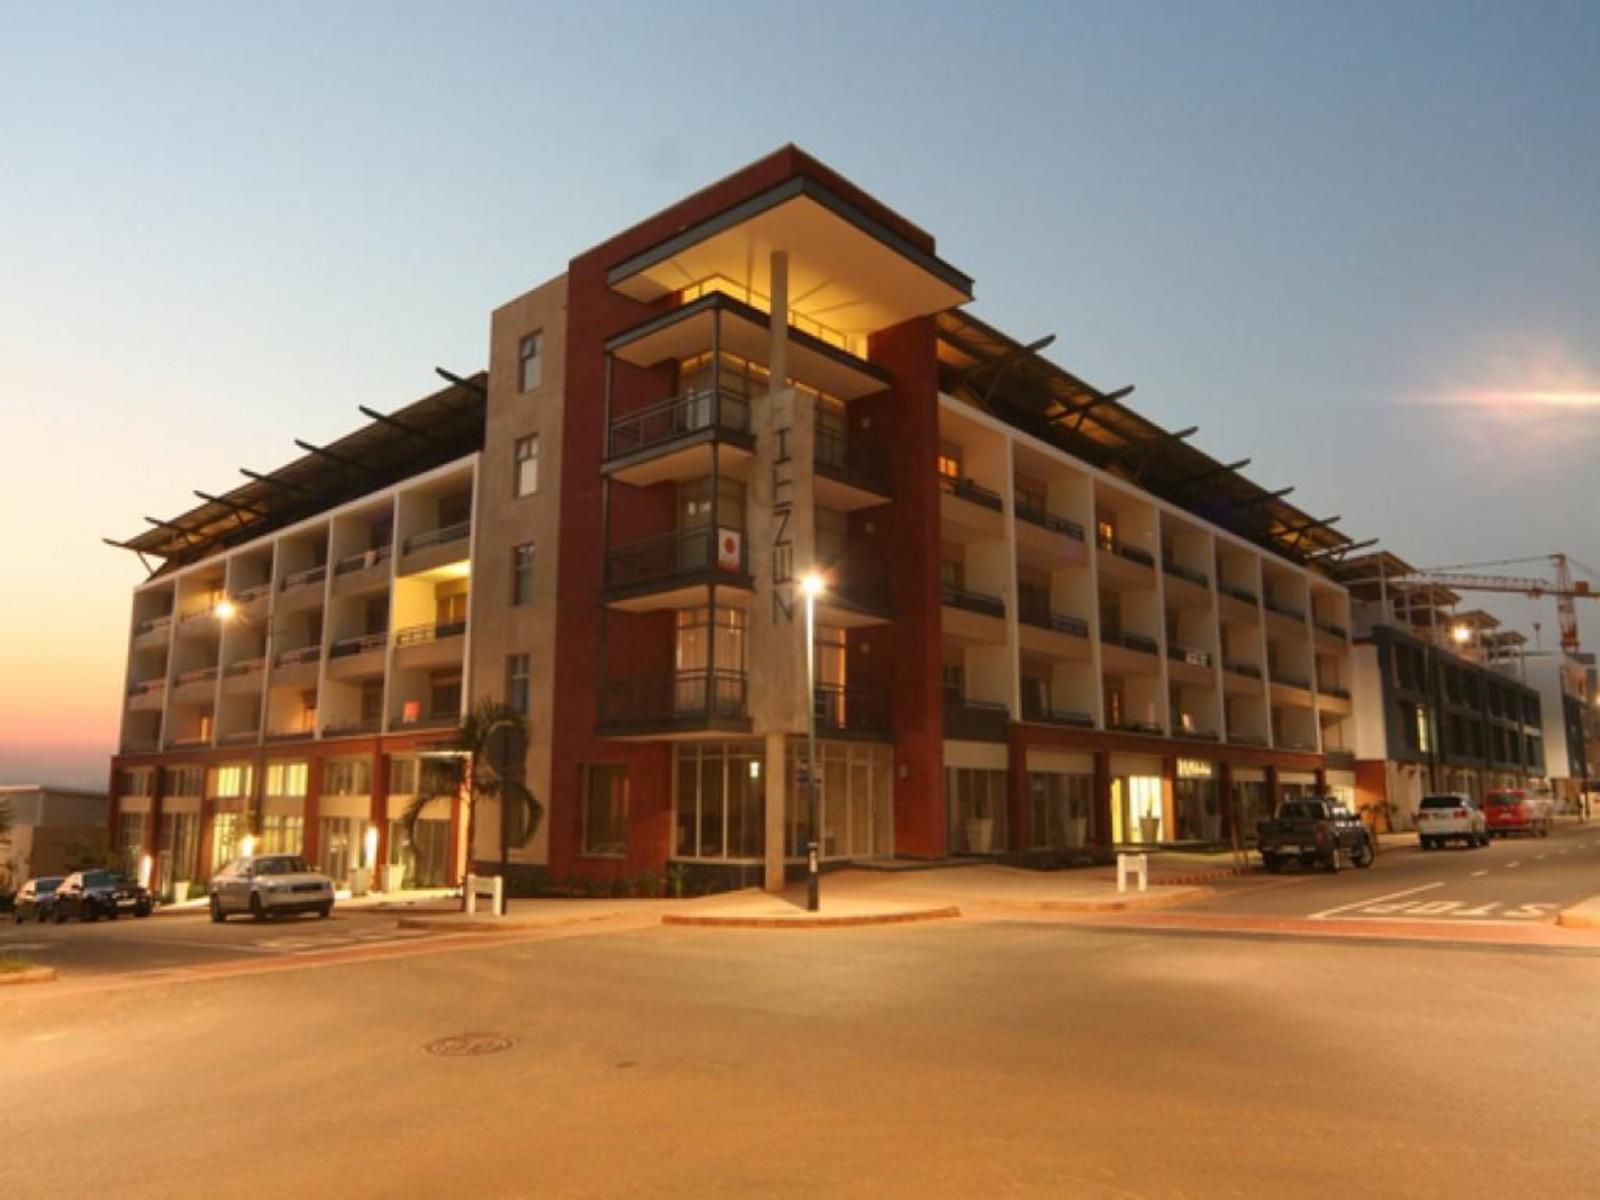 Zenith Apartments La Loggia Umhlanga Ridge Umhlanga Kwazulu Natal South Africa House, Building, Architecture